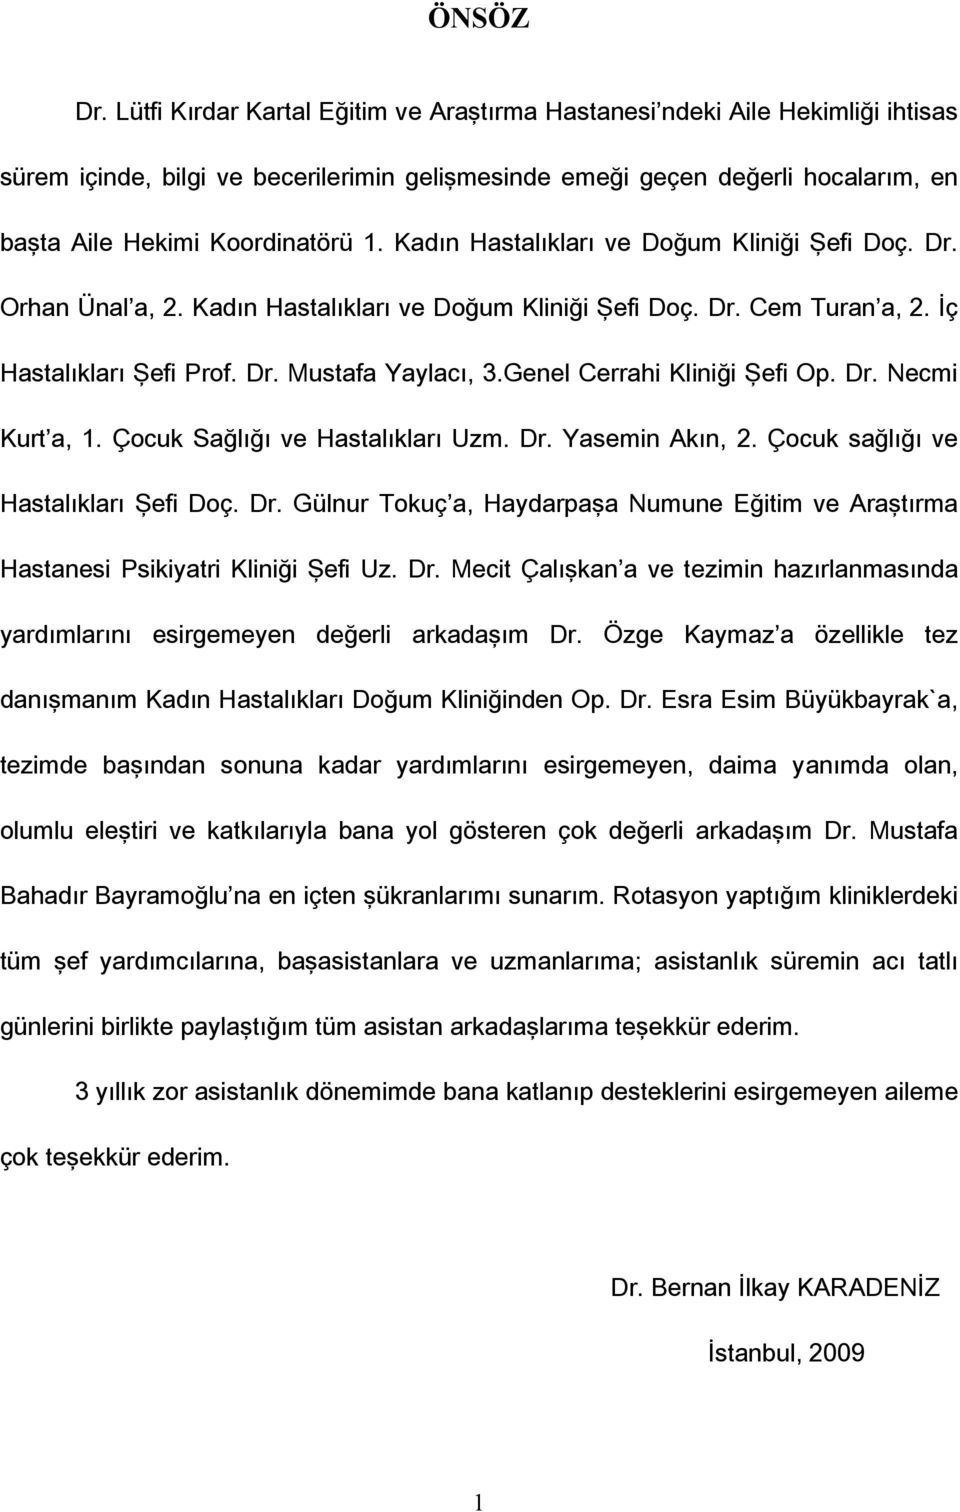 Kadın Hastalıkları ve Doğum Kliniği Şefi Doç. Dr. Orhan Ünal a, 2. Kadın Hastalıkları ve Doğum Kliniği Şefi Doç. Dr. Cem Turan a, 2. İç Hastalıkları Şefi Prof. Dr. Mustafa Yaylacı, 3.